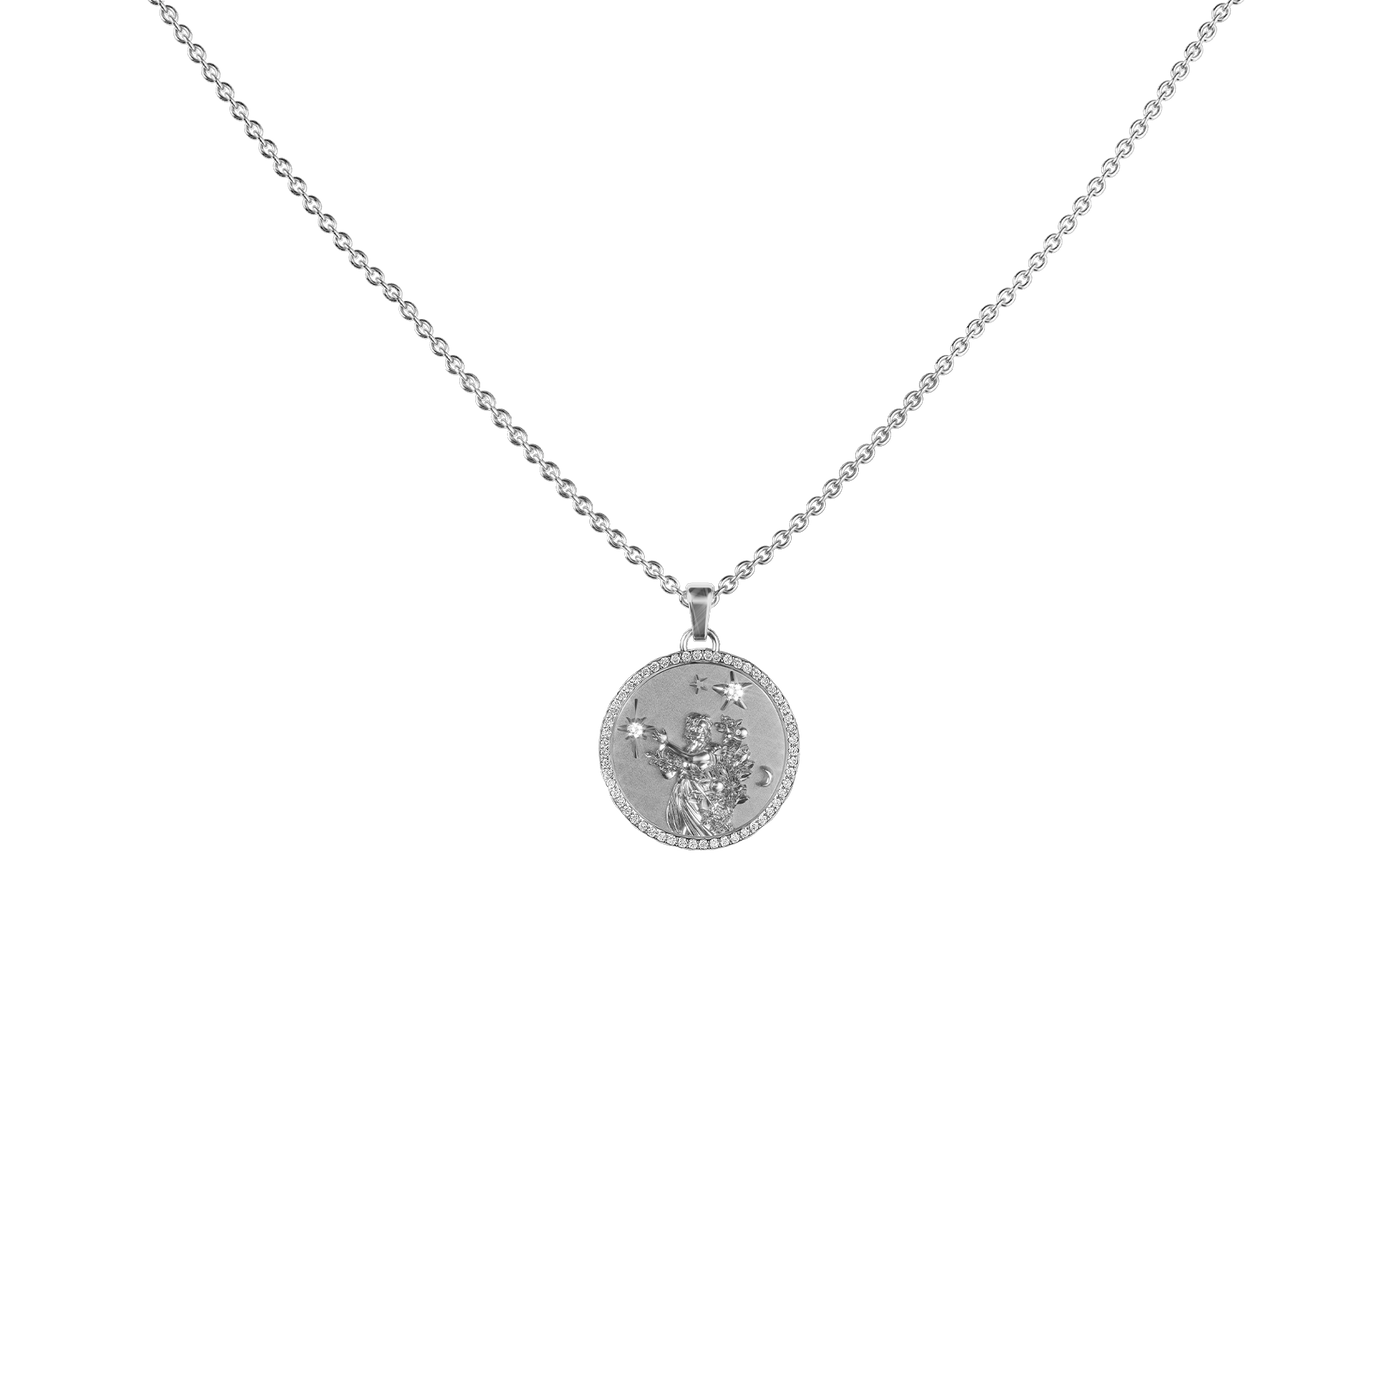 Virgo Amulet Pendant With Pave Diamond Rim